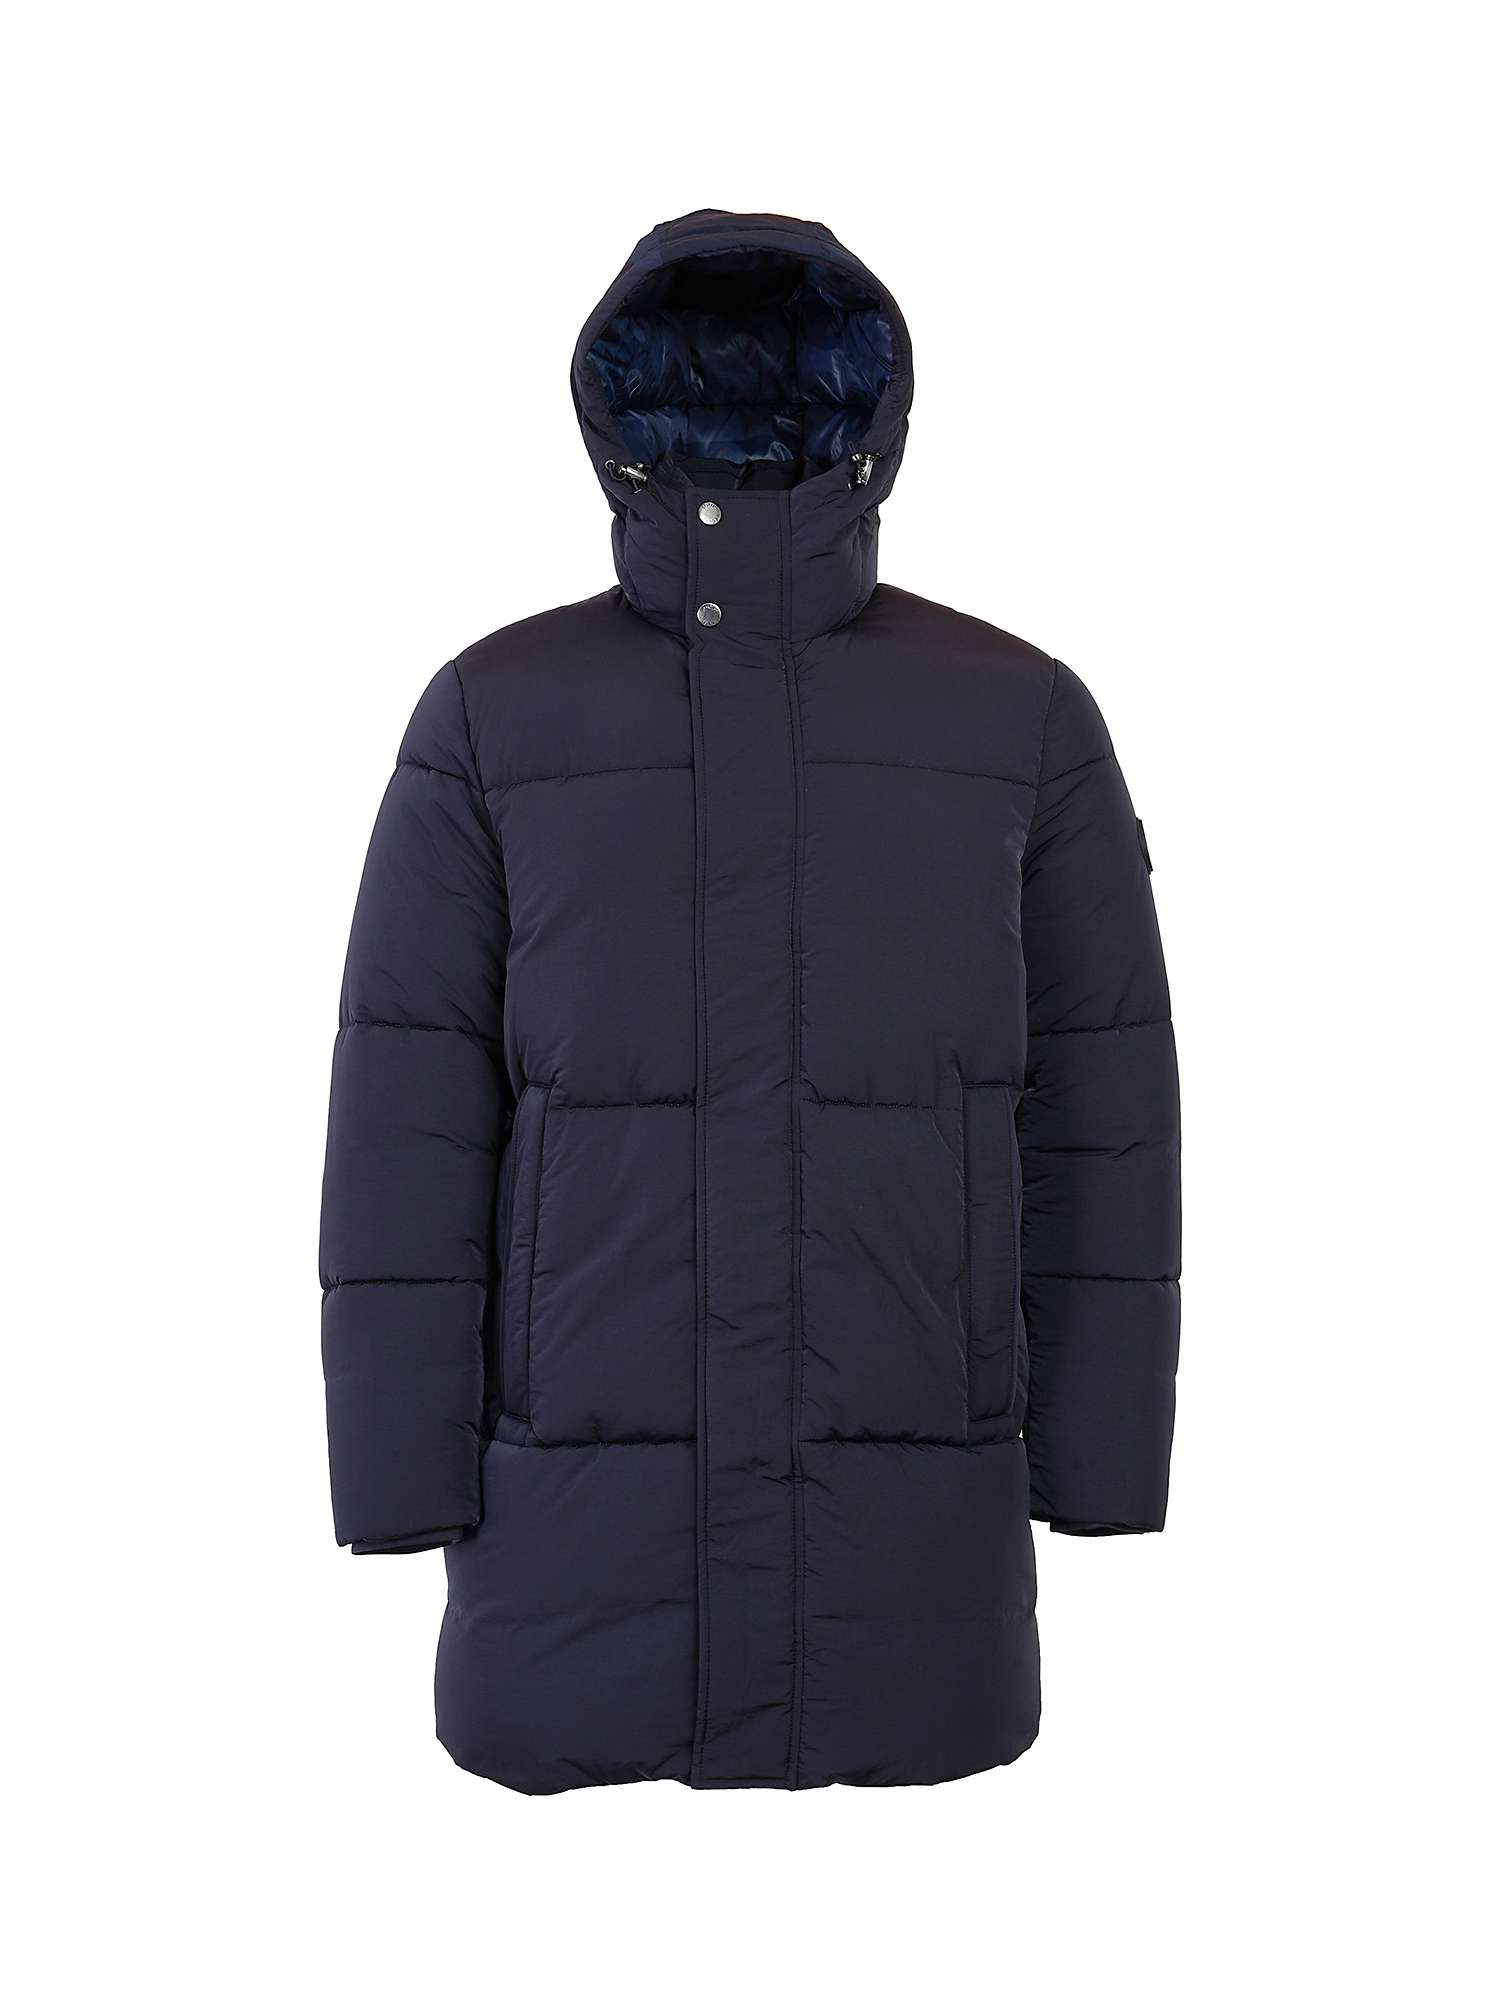 Buy JOOP! Fabrius Quilted Hooded Winter Jacket, Dark Blue Online at johnlewis.com